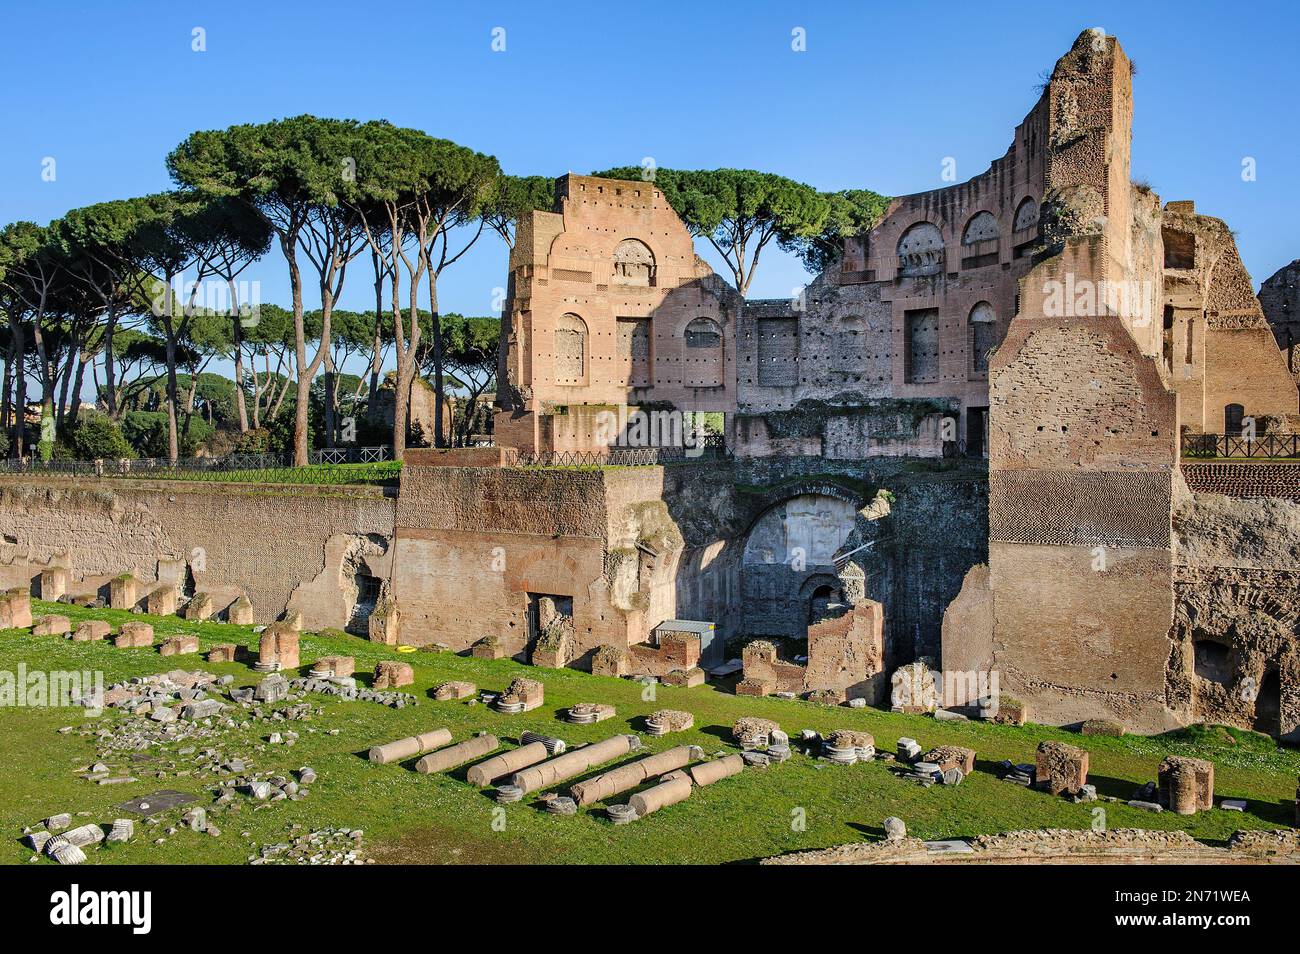 historisches Hippodrom, Ruine von Stadion von Domitian, Palatinhügel, Palatin, Rom, Latium, Italien, Europa Stock Photo